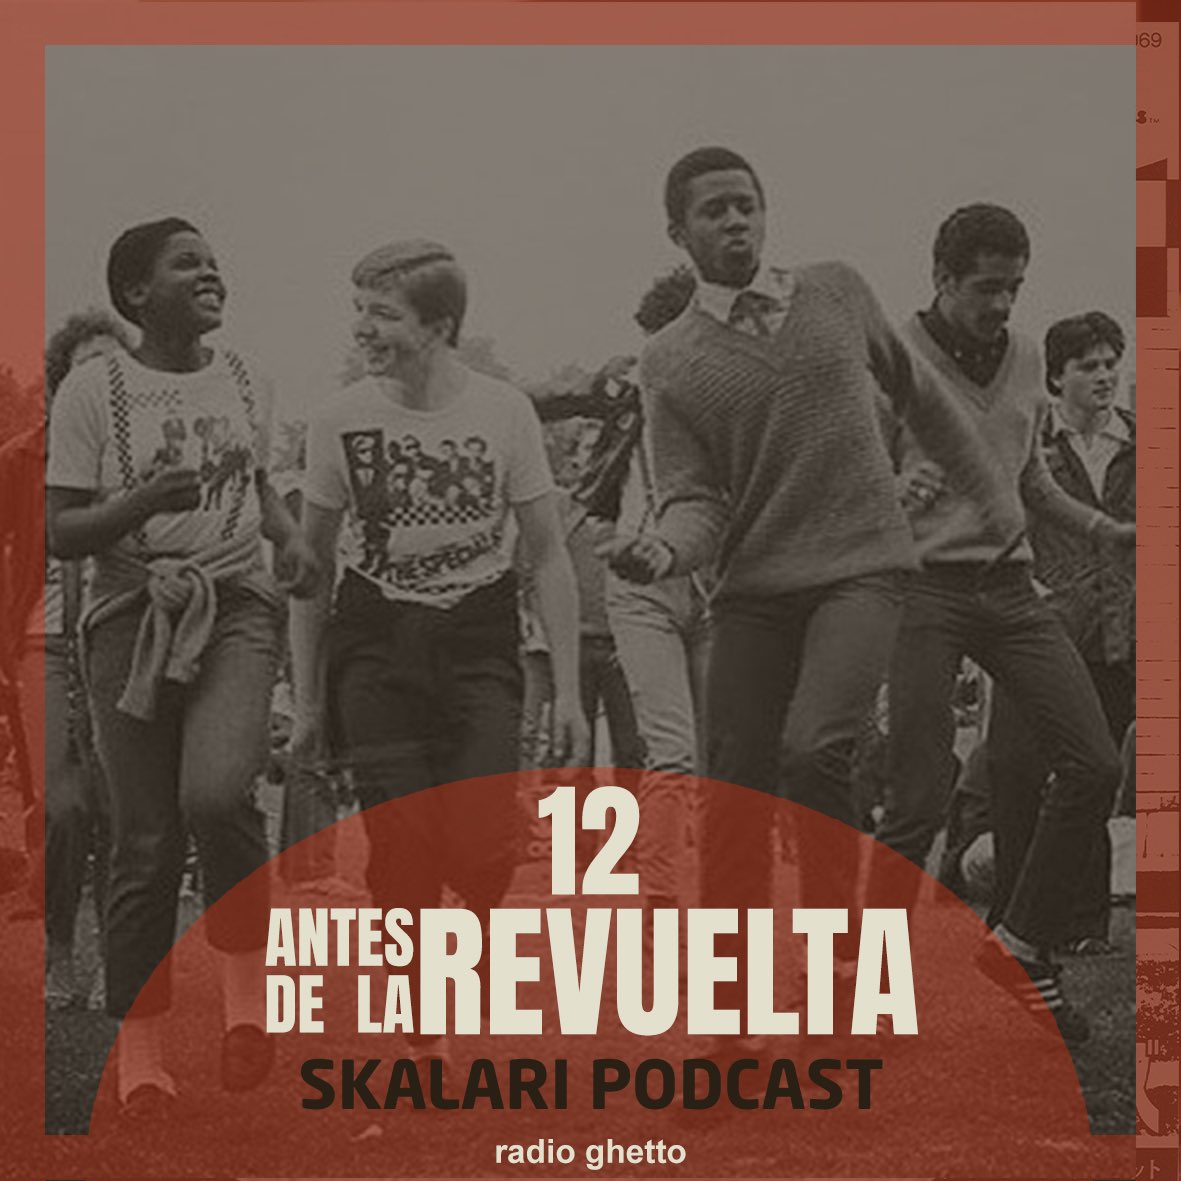 #skalari Podcast.12 
“Antes De La Revuelta“ 
 Disponible / Available
+ info 👉🏾juantxoskalari.com

#radio #irratia #radioghetto #skamusic #reggae #oi #punkrock #80s 
#losdelatorre #toñoquirazco
 #losprisioneros #paralamasdosucesso #fourskins #decibelios #melbourneskaorchestra